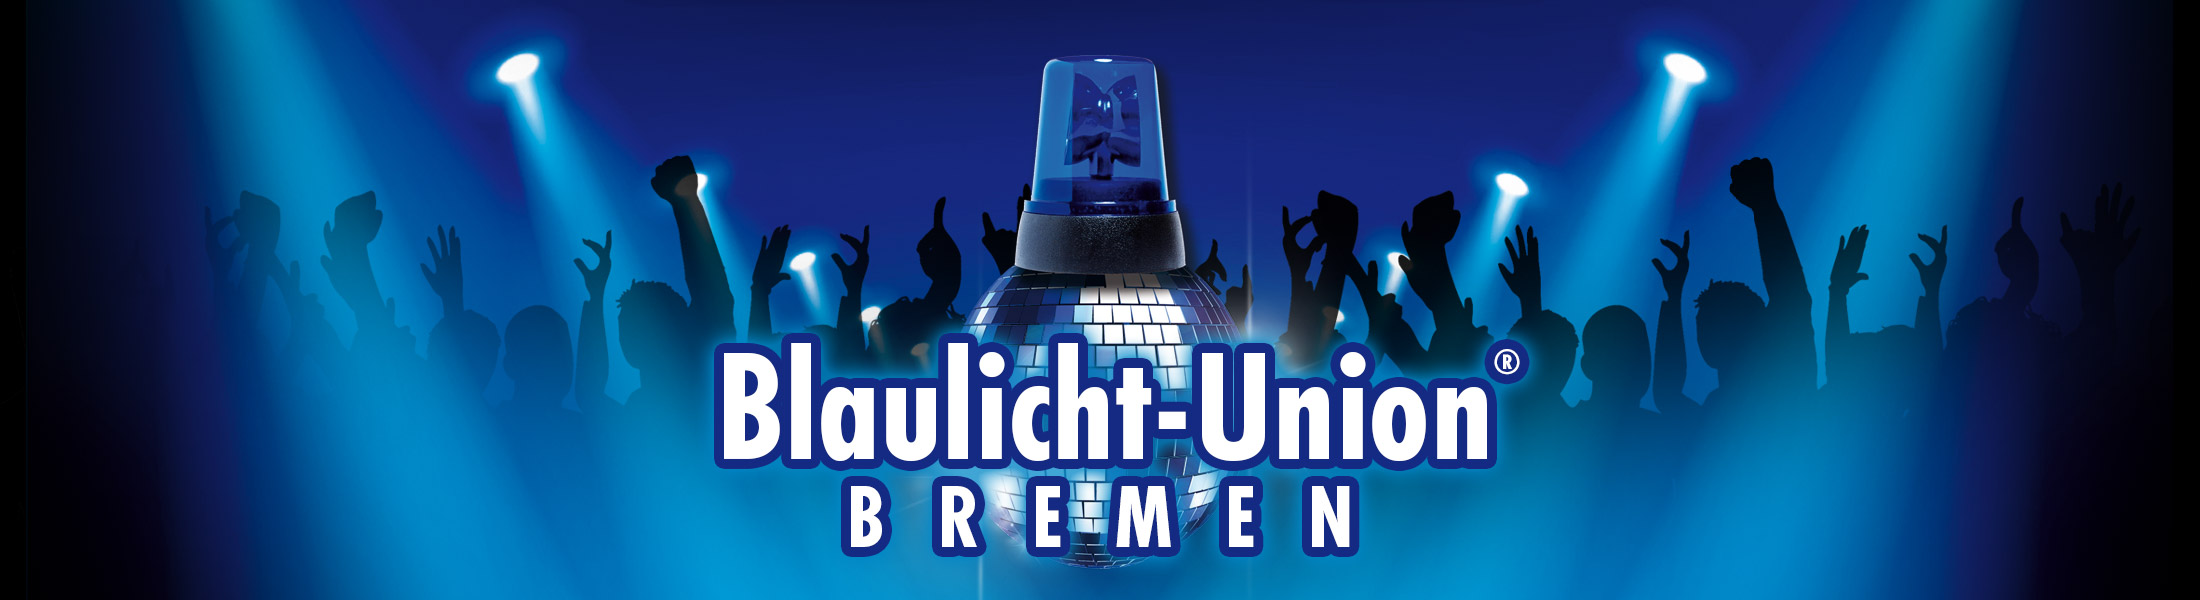 Blaulicht Union Party® Bremen